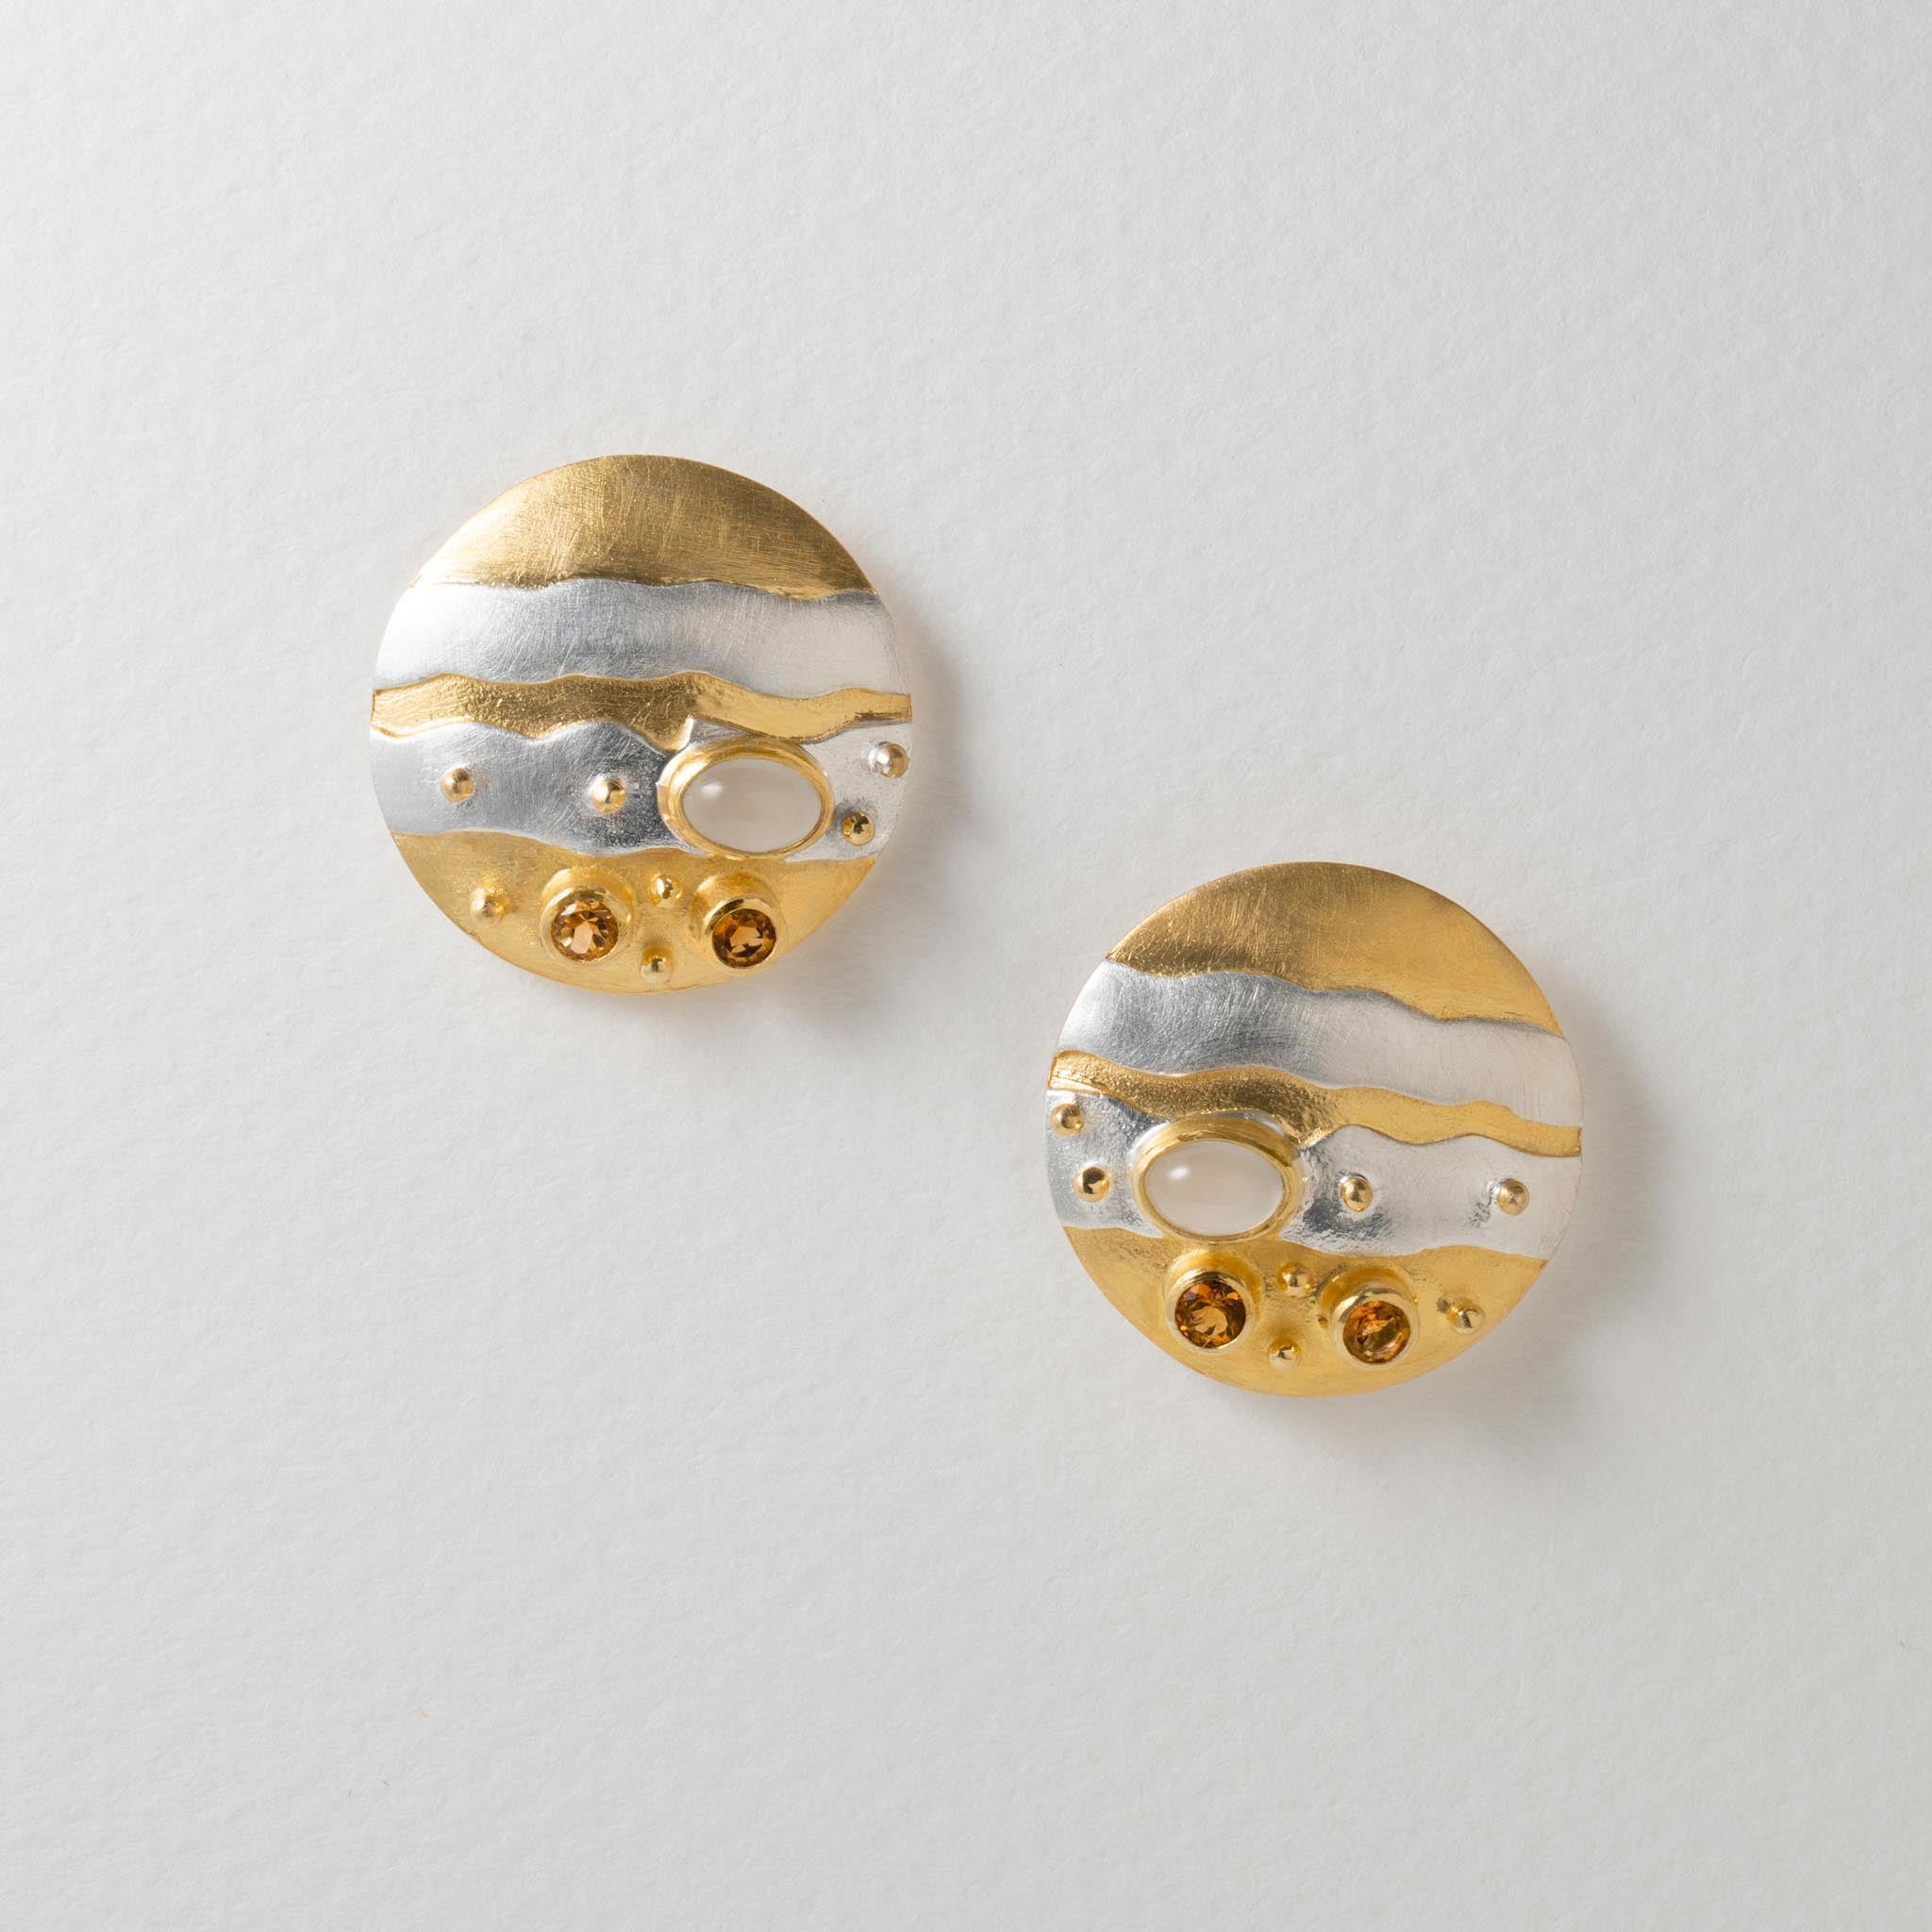 Paula Bolton Silver Jewellery - Jupiter Planet Earrings